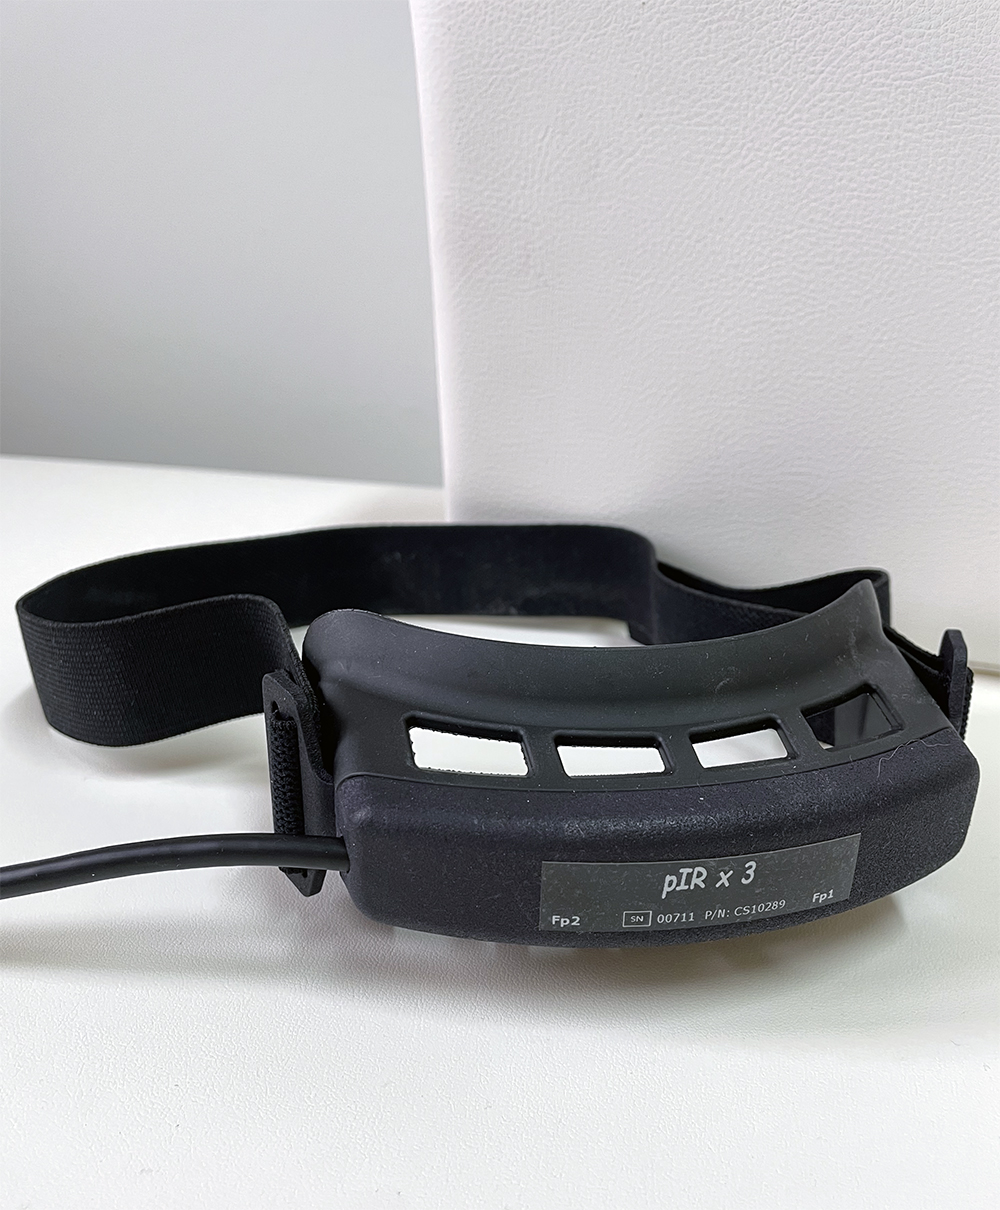 Biofeedback-Gerät pIRx3 zur Messung der Temperaturabstrahlung an der Stirn